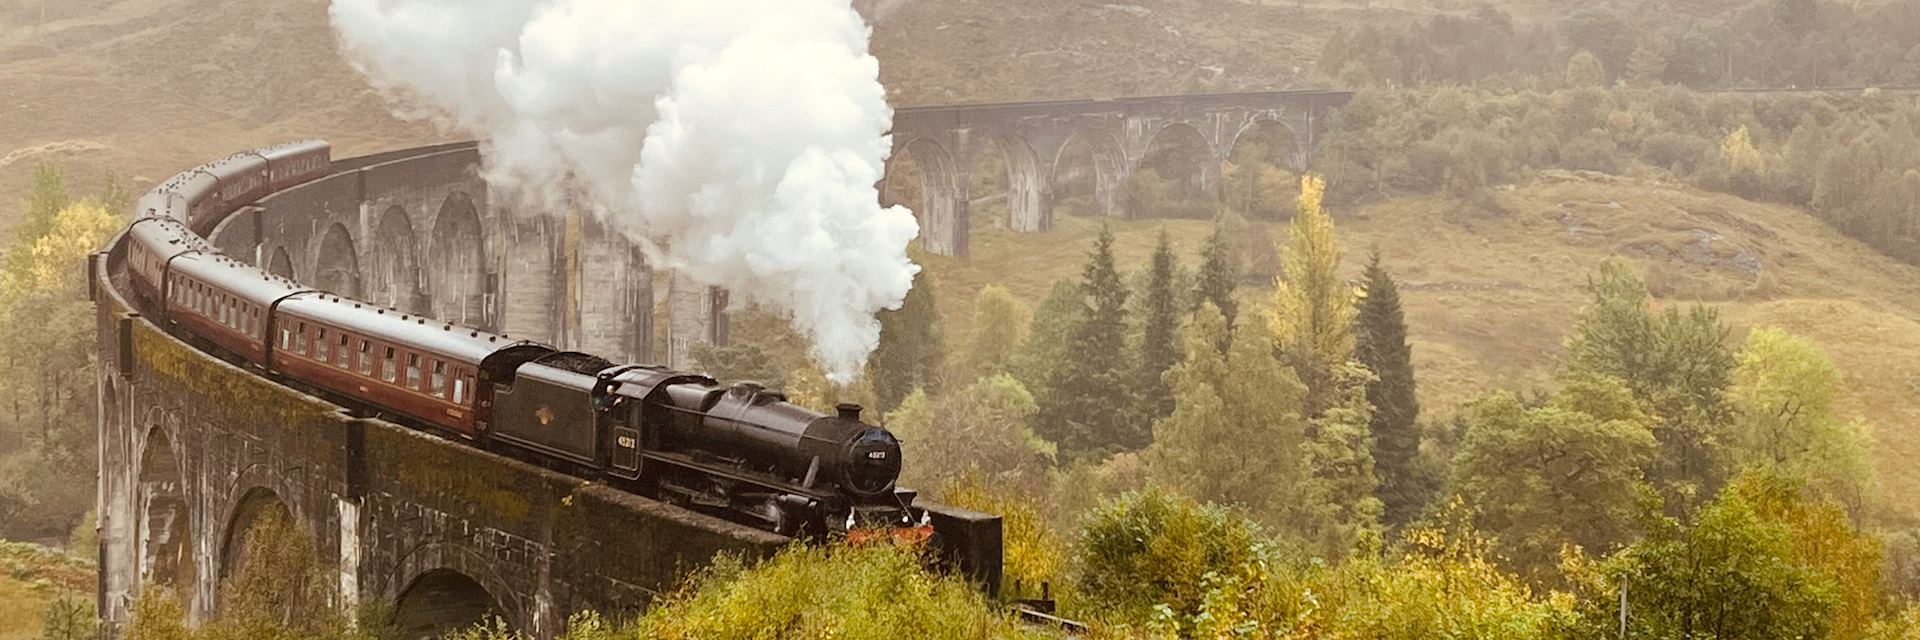 Belmond Royal Scotsman train